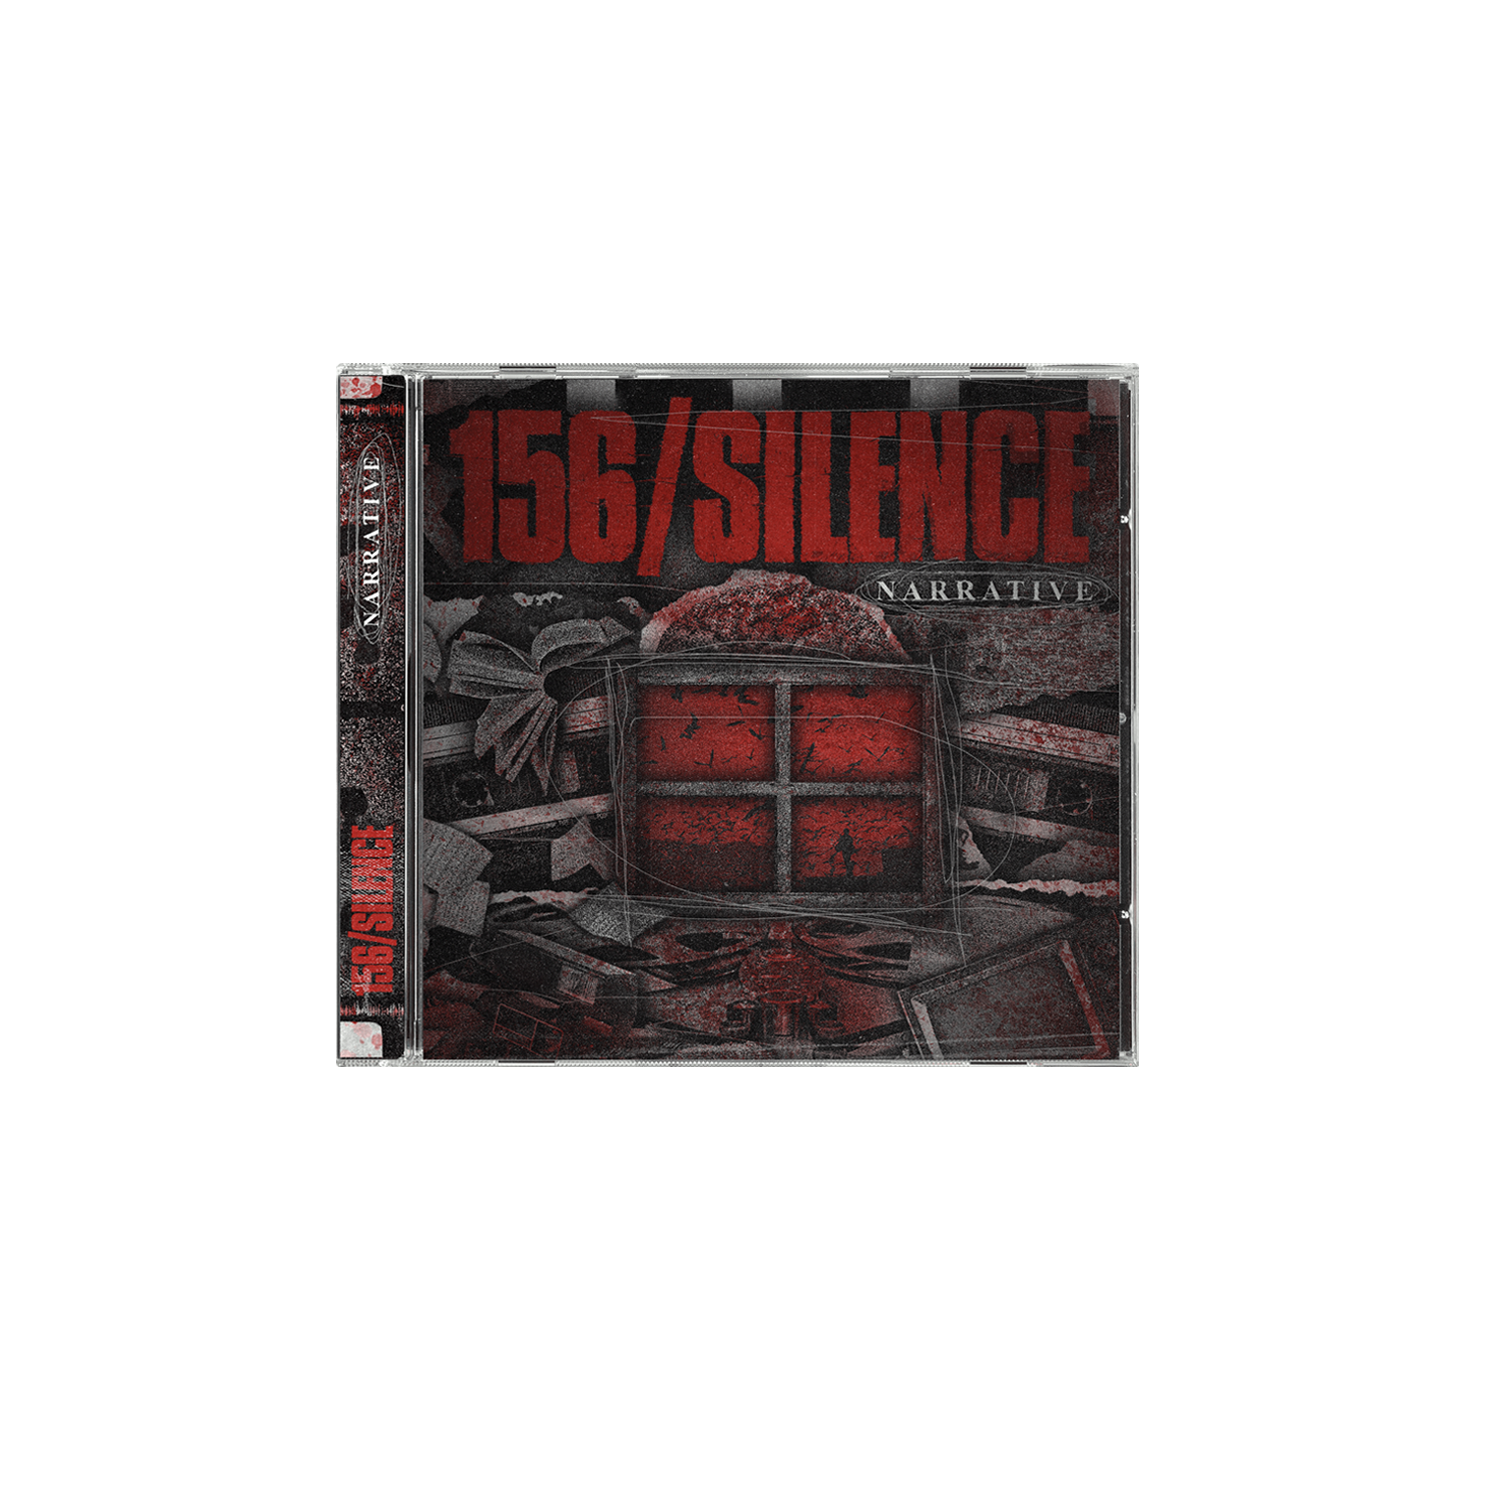 156/Silence - 'Narrative' CD